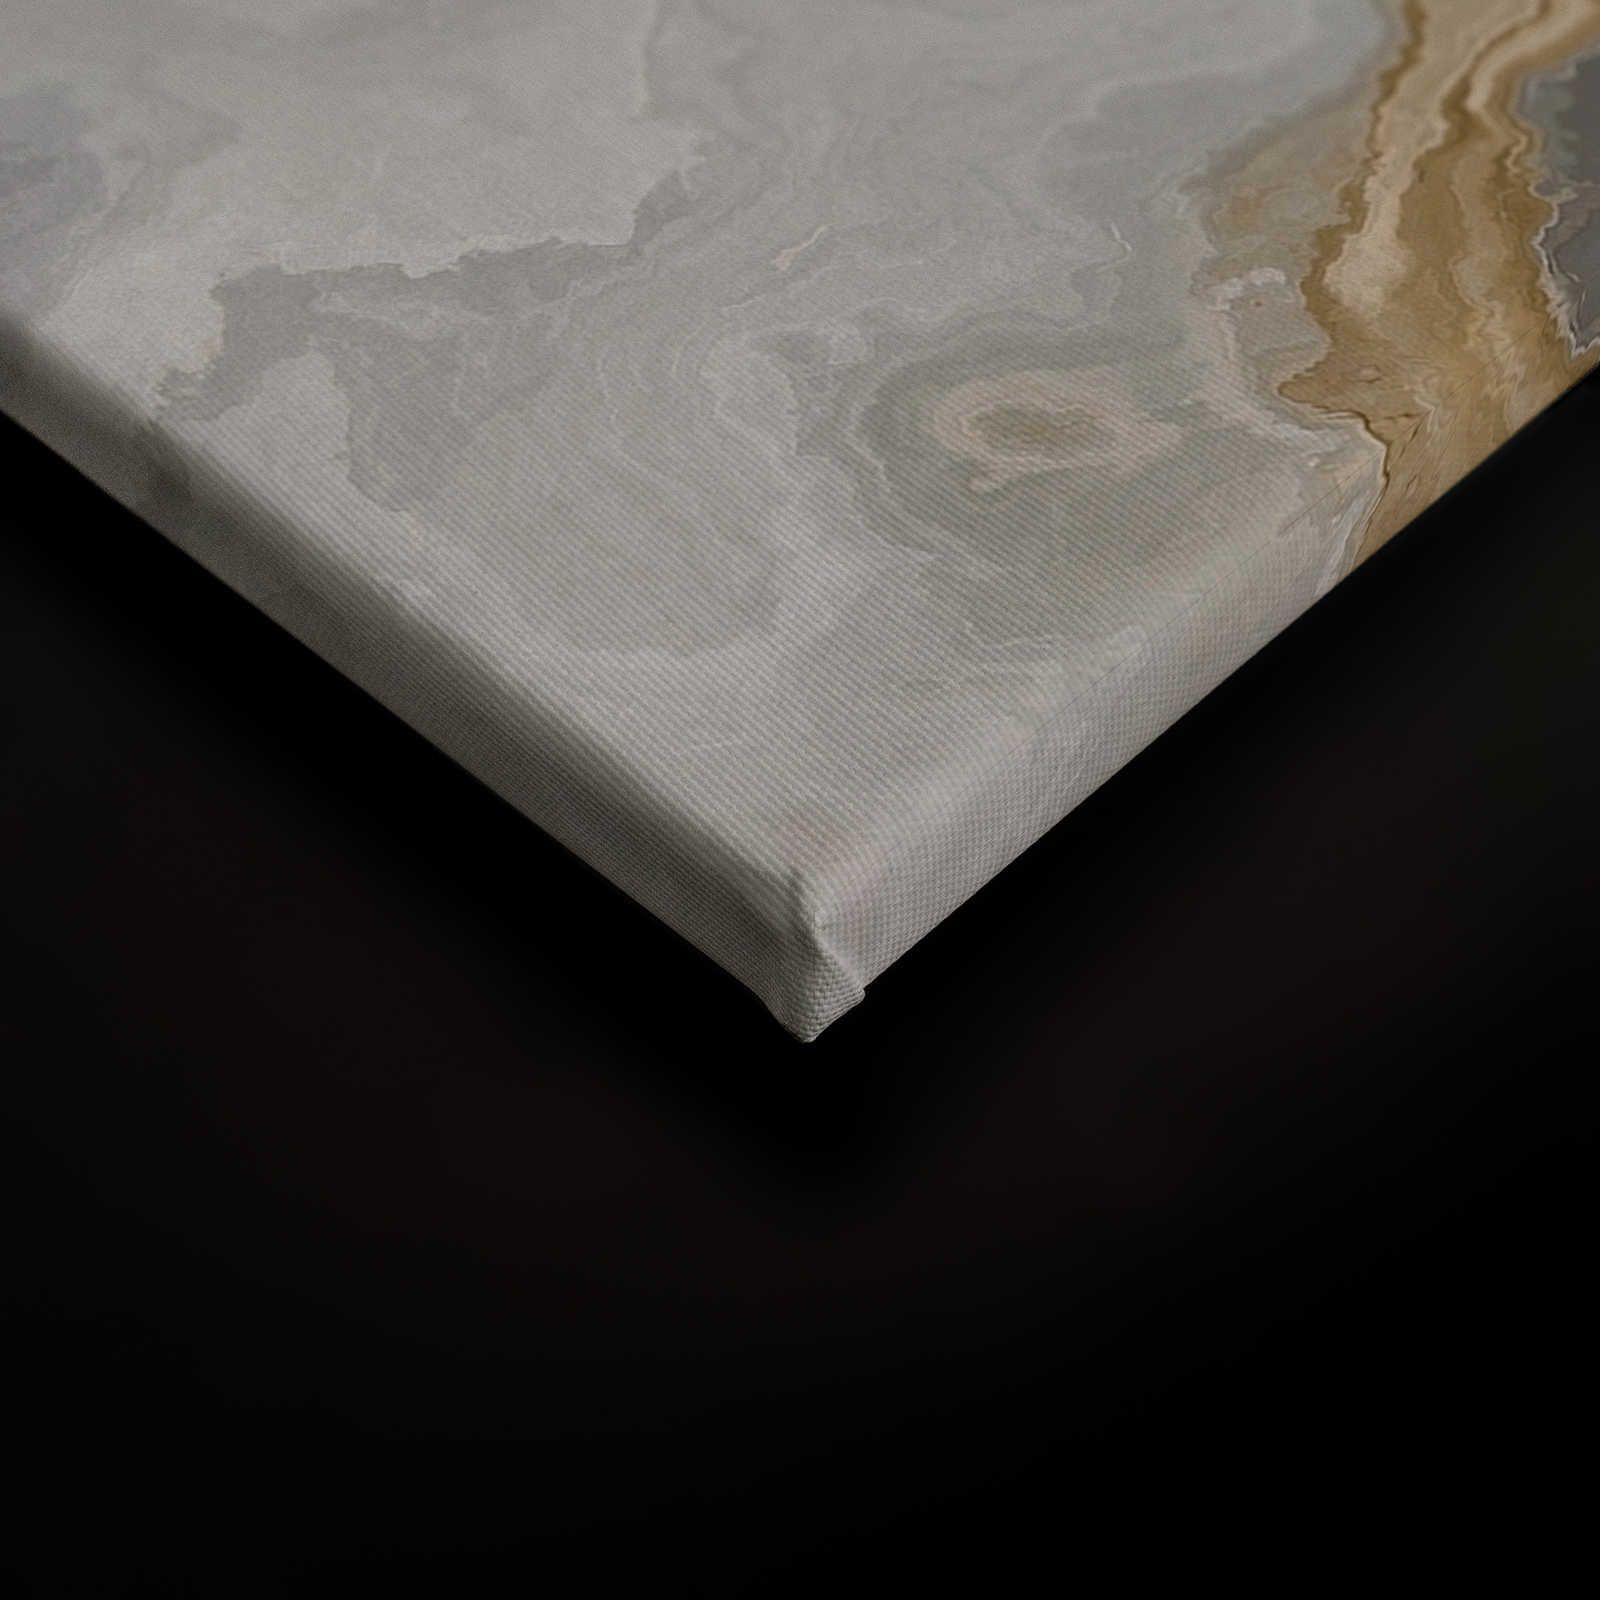             Lienzo pintura aspecto piedra cuarzo con jaspeado - 0,90 m x 0,60 m
        